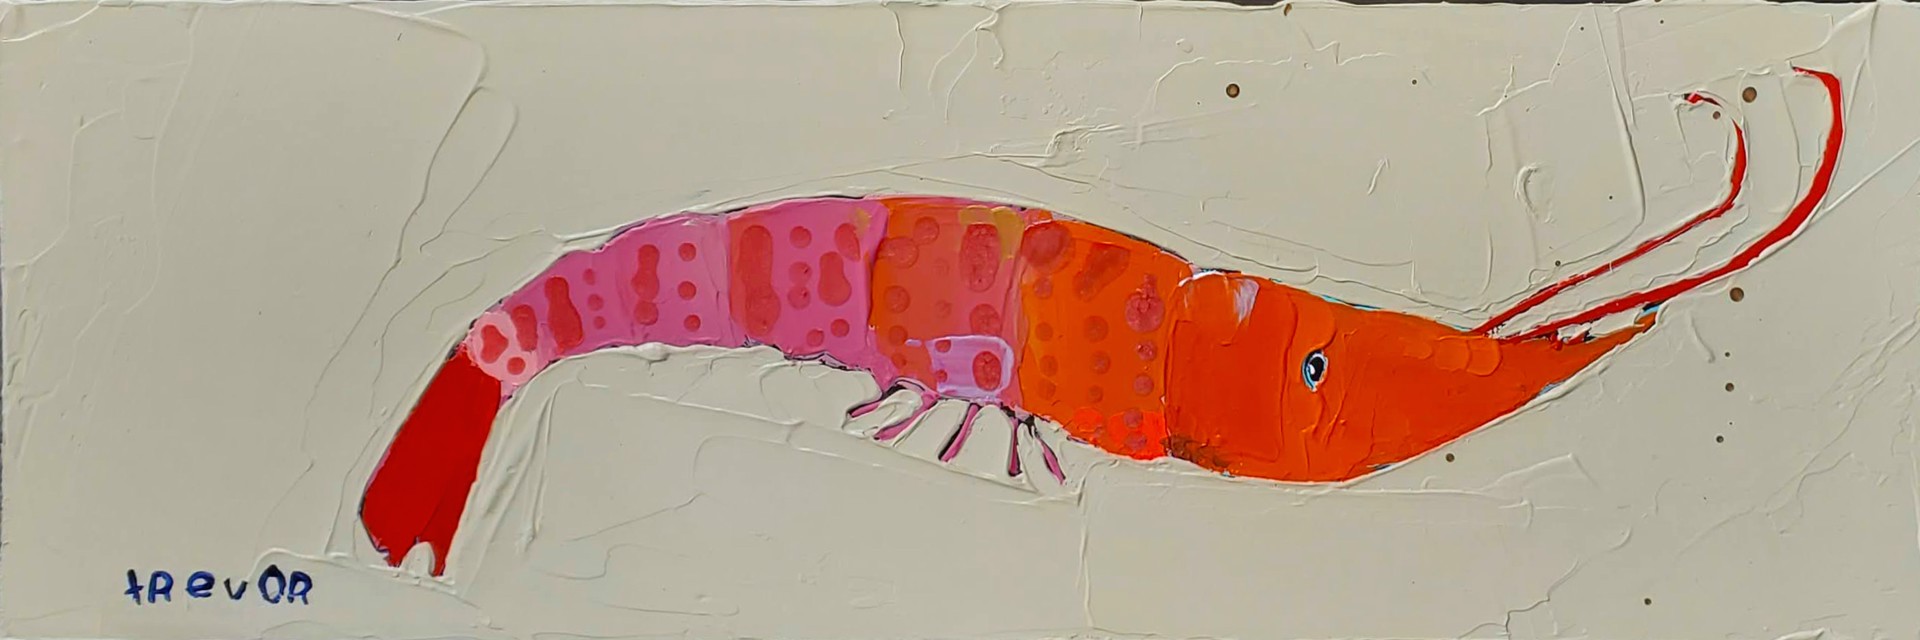 Shrimpster by Trevor Mikula